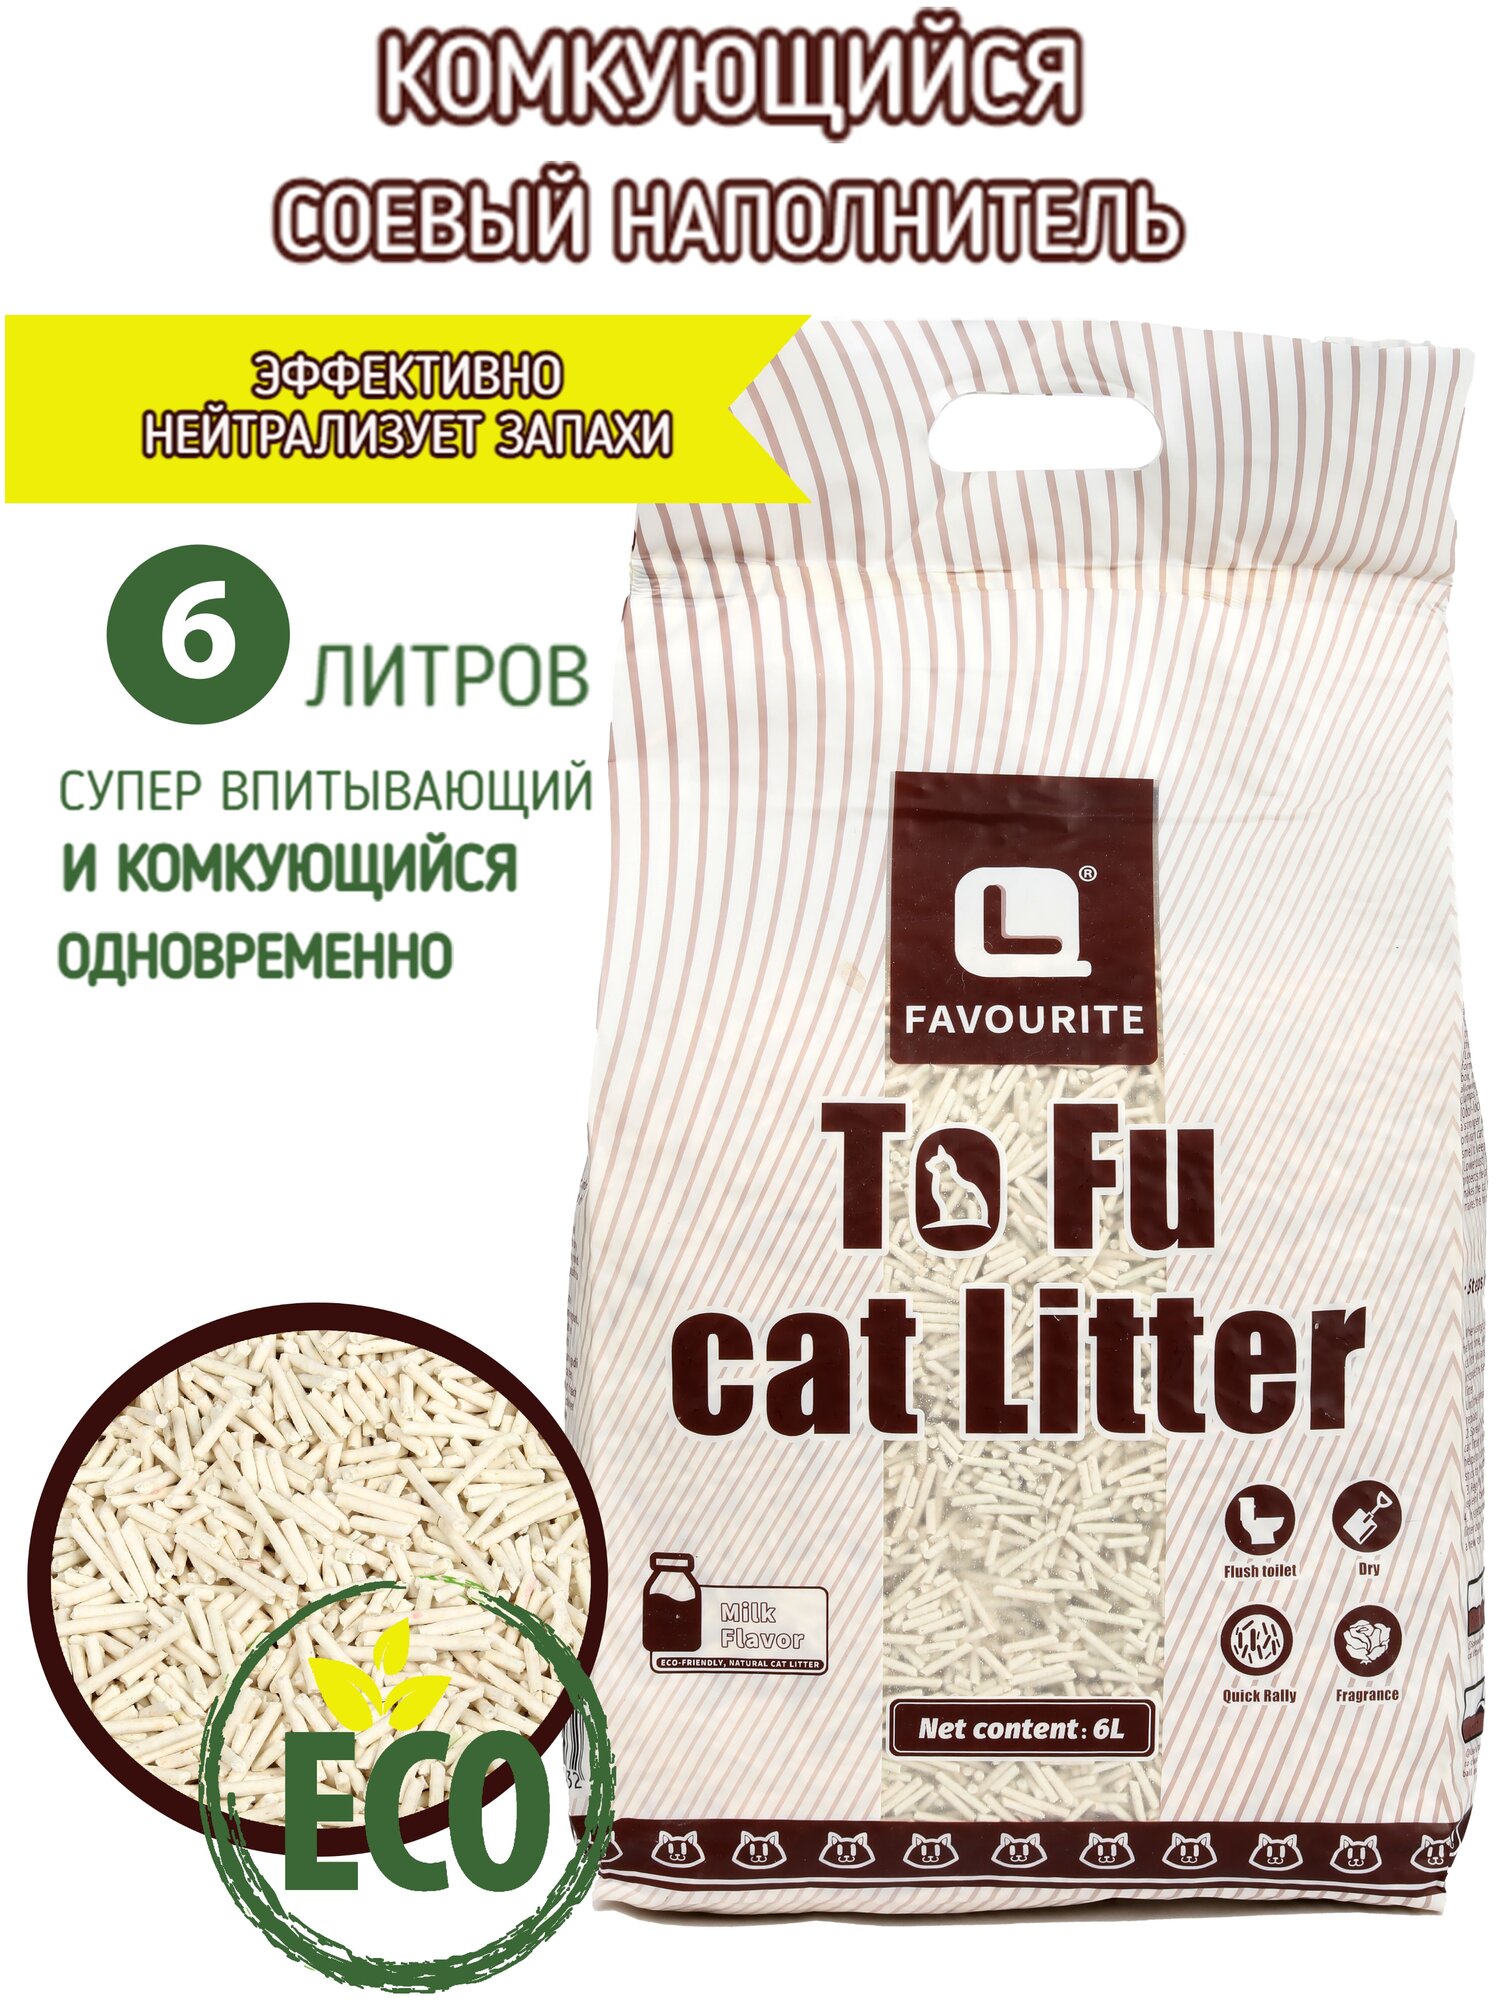 Наполнитель комкующийся для кошачьего туалета тофу (tofu) молочный, премиум класса, беспыльный, 6 литров